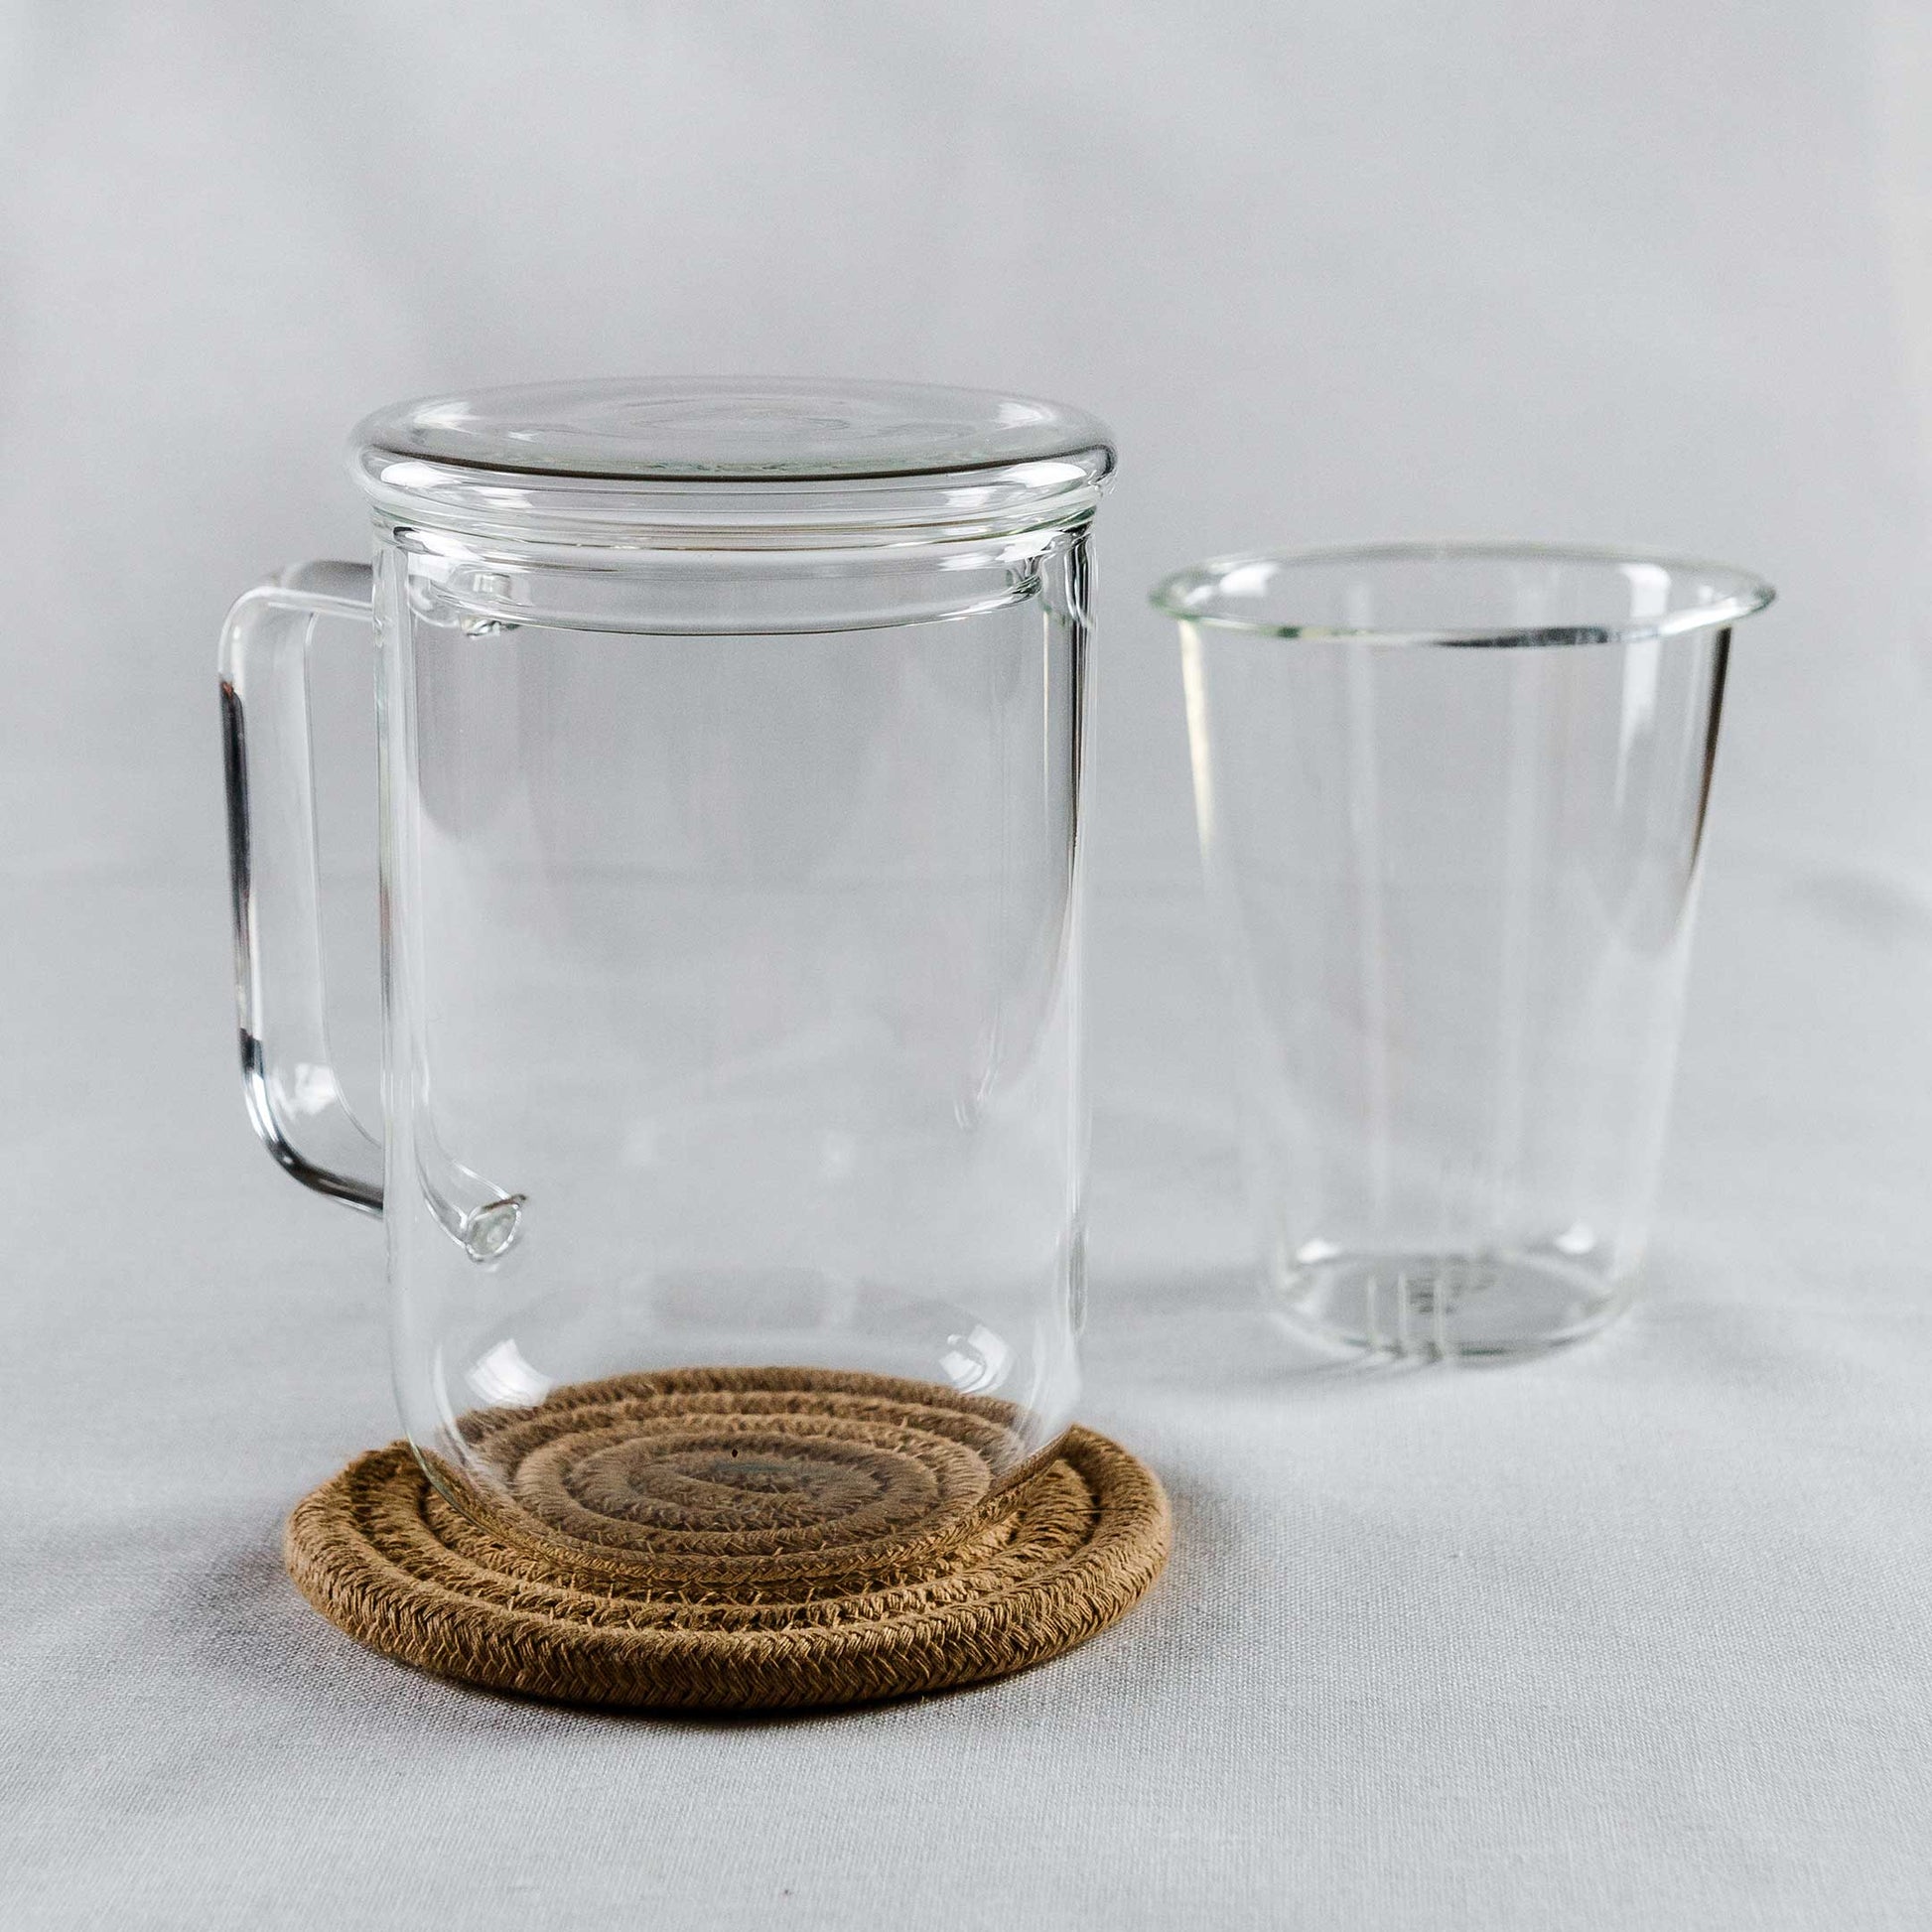 Teeglas mit Deckel auf einem Untersetzer mit Sieb neben dem Glas.